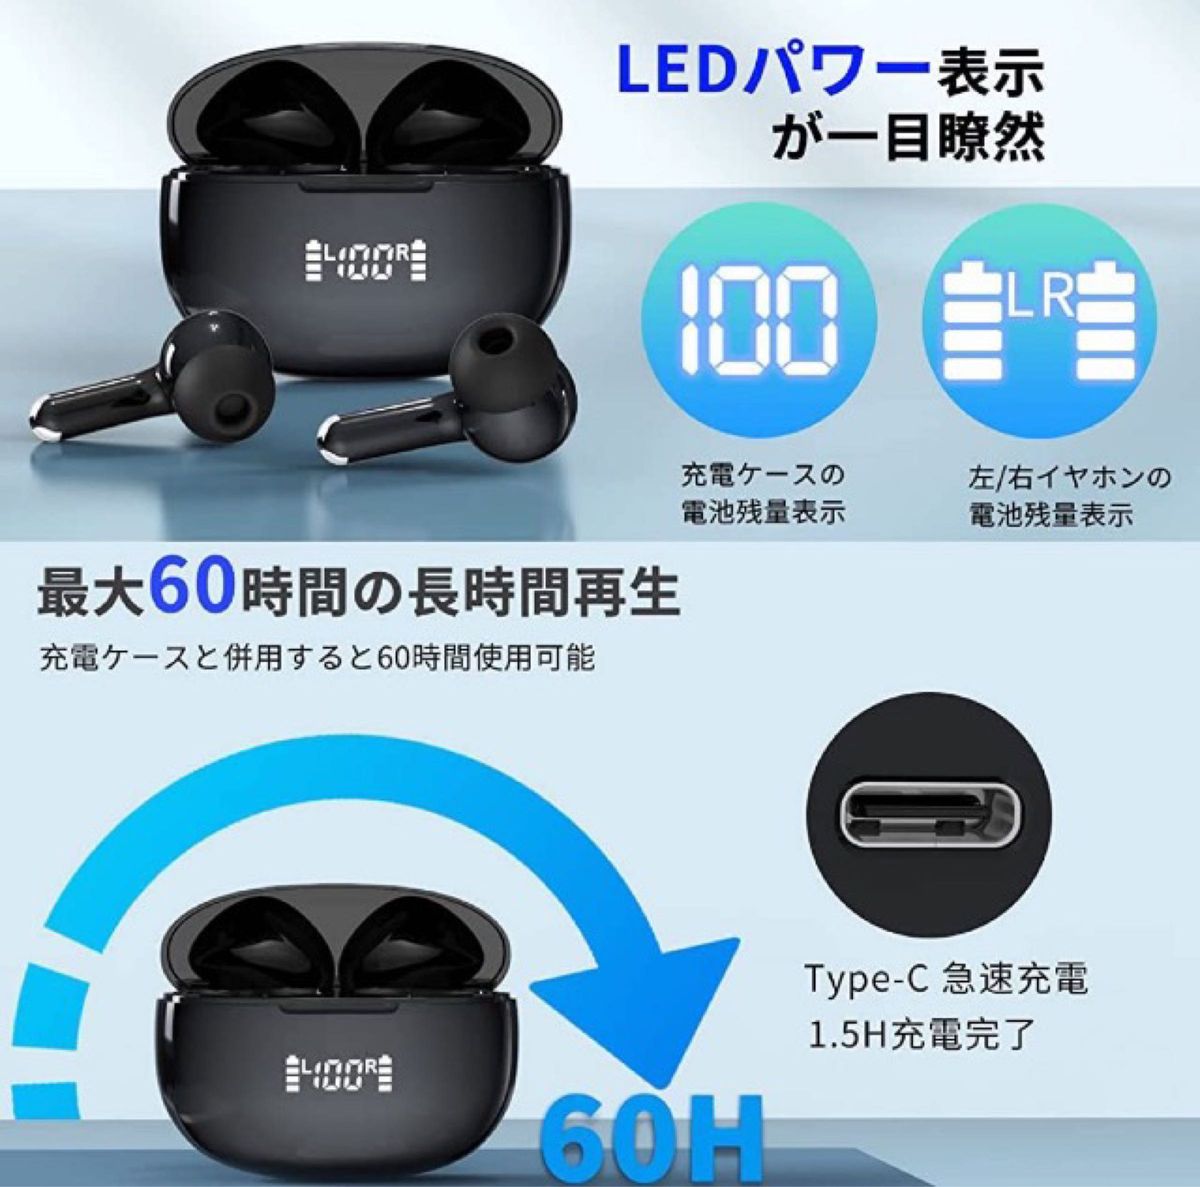 【Bluetooth5.3 技術 蓋を開けたら接続】bluetooth イヤホン ワイヤレスイヤホン マイク付き 重低音Hi-Fi